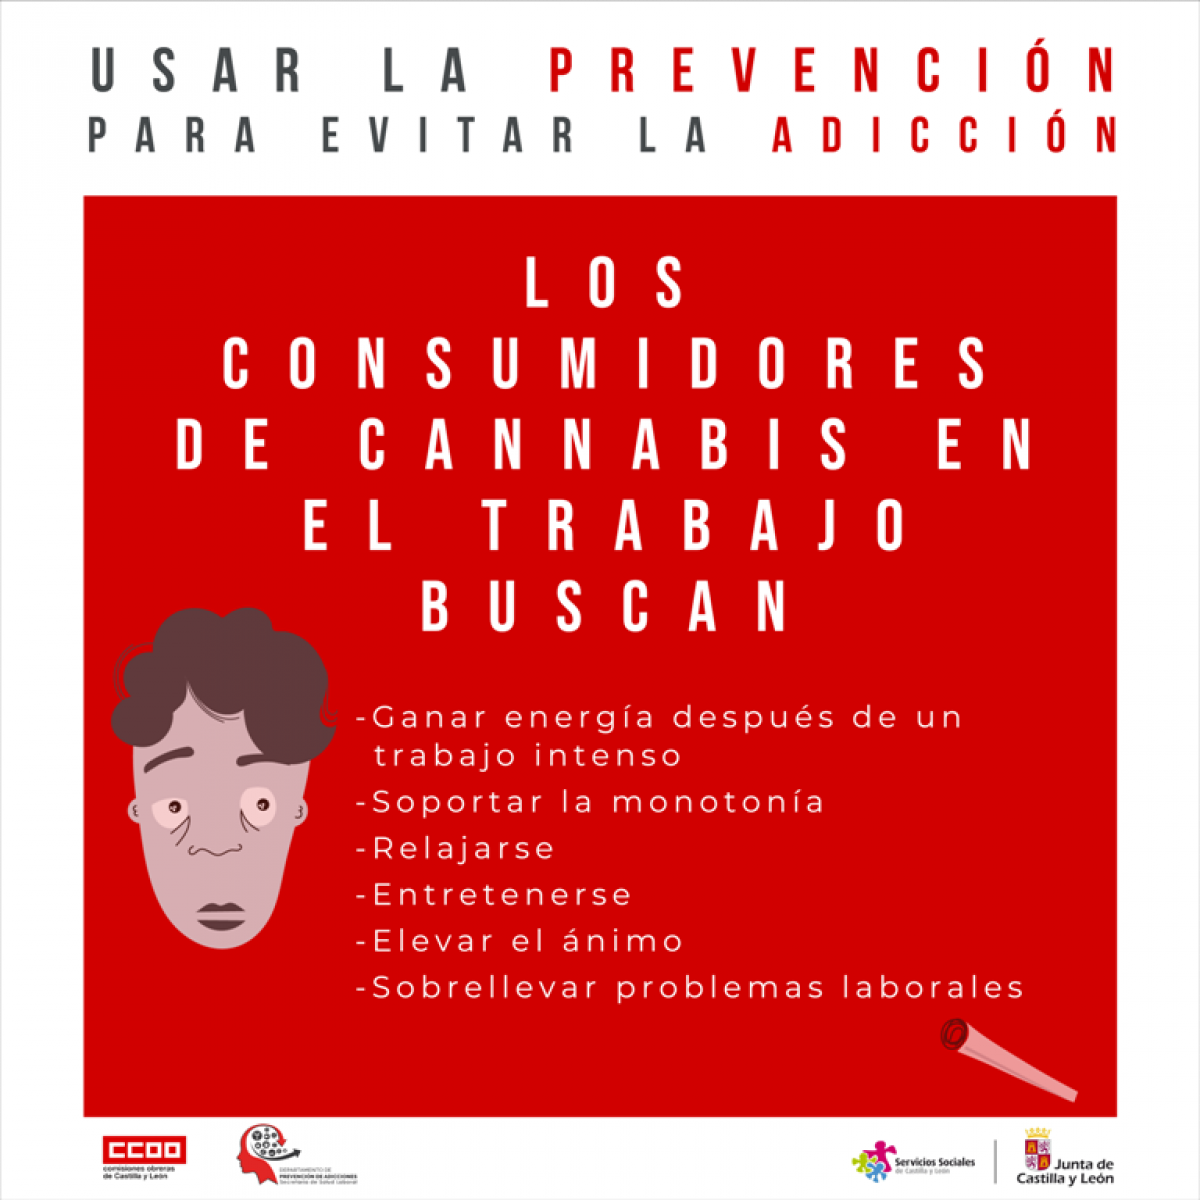 Campaña "Usar la prevención para evitar la adicción"